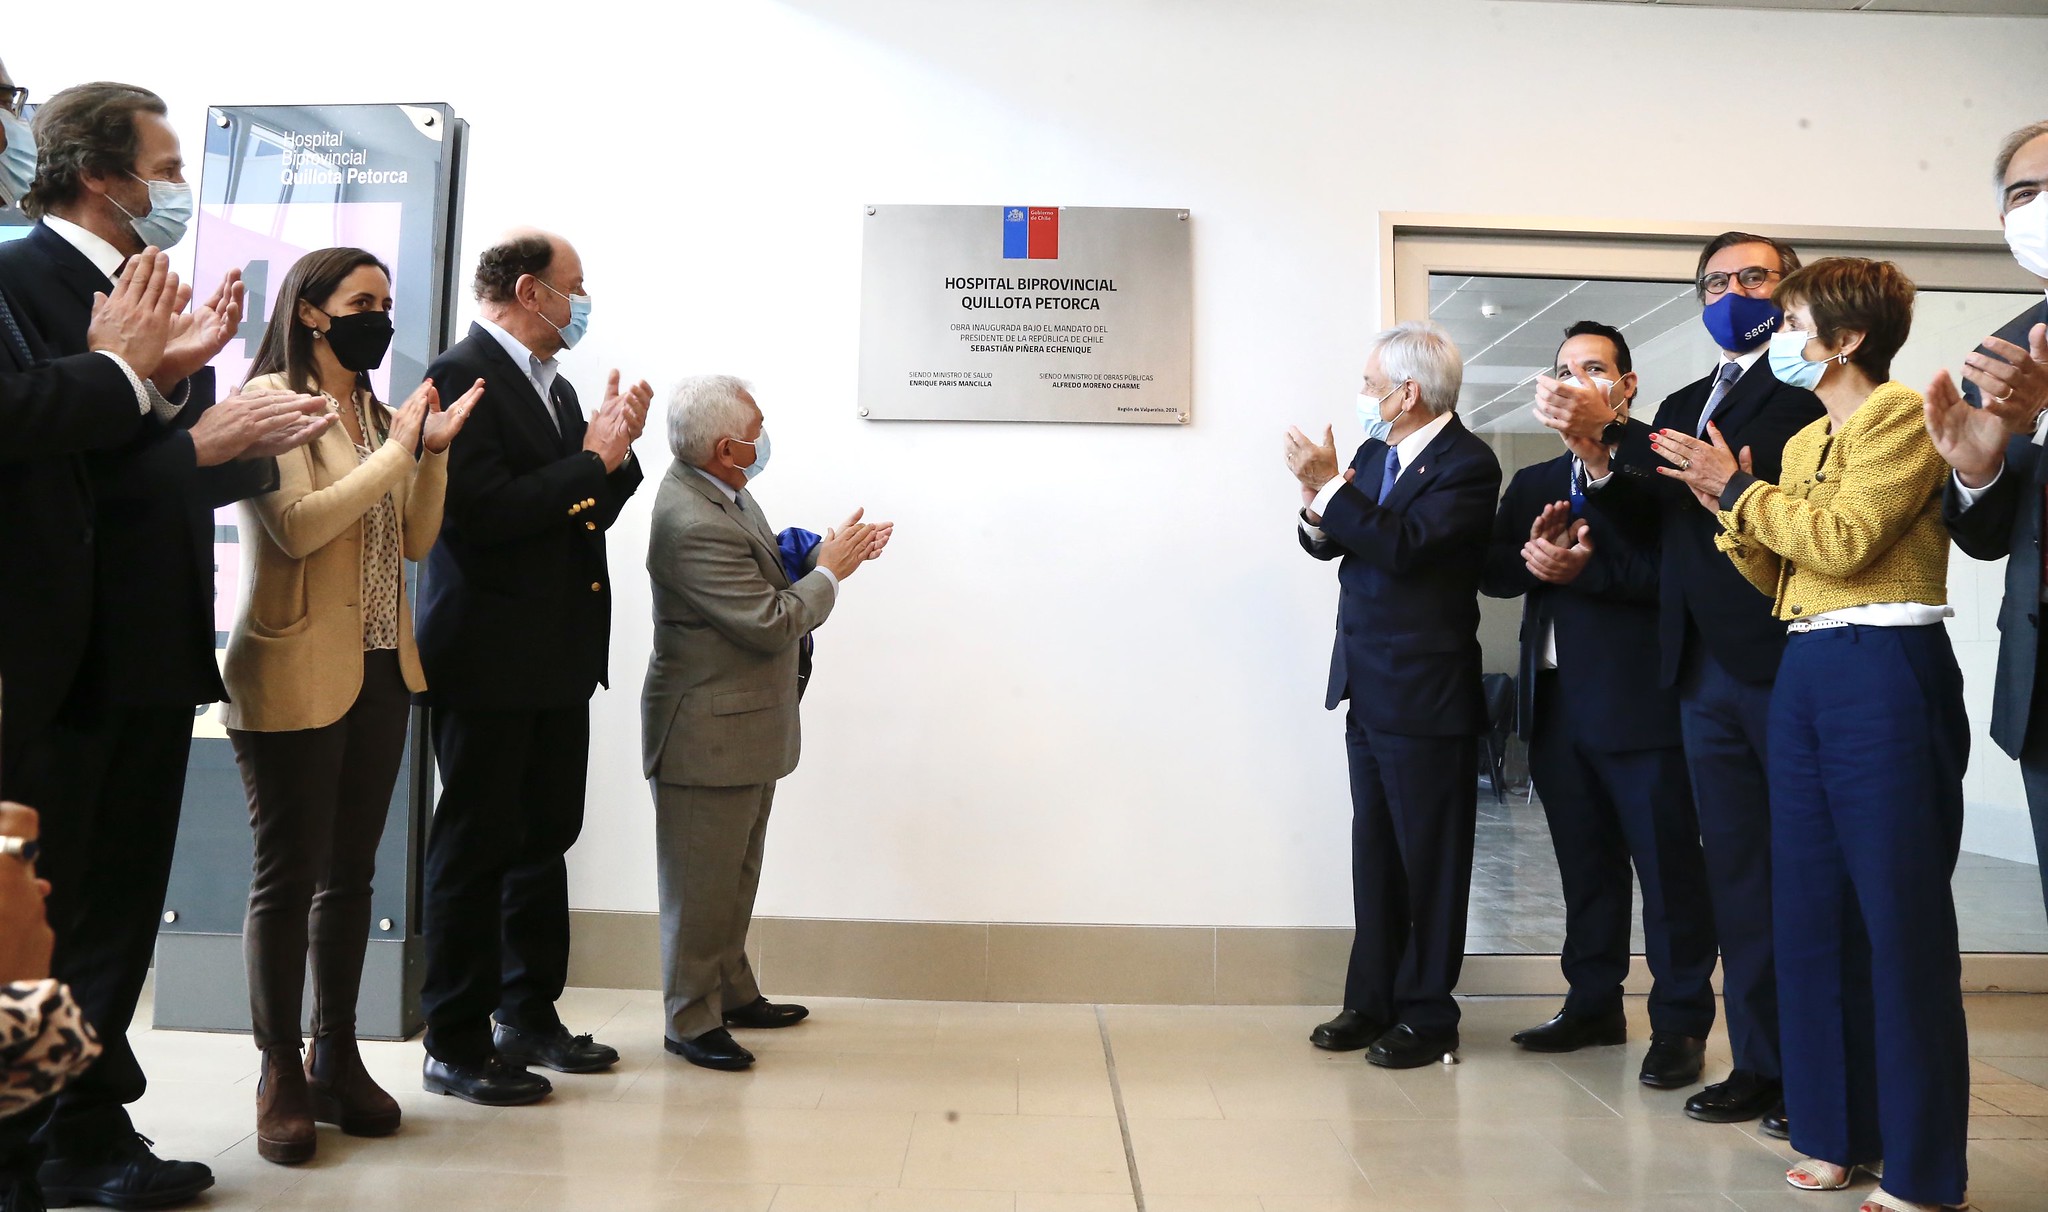 Presidente Piñera inaugura Hospital Biprovincial Quillota-Petorca: “Es un salto adelante en calidad con un centro de alta complejidad que la gente merecía y necesitaba”